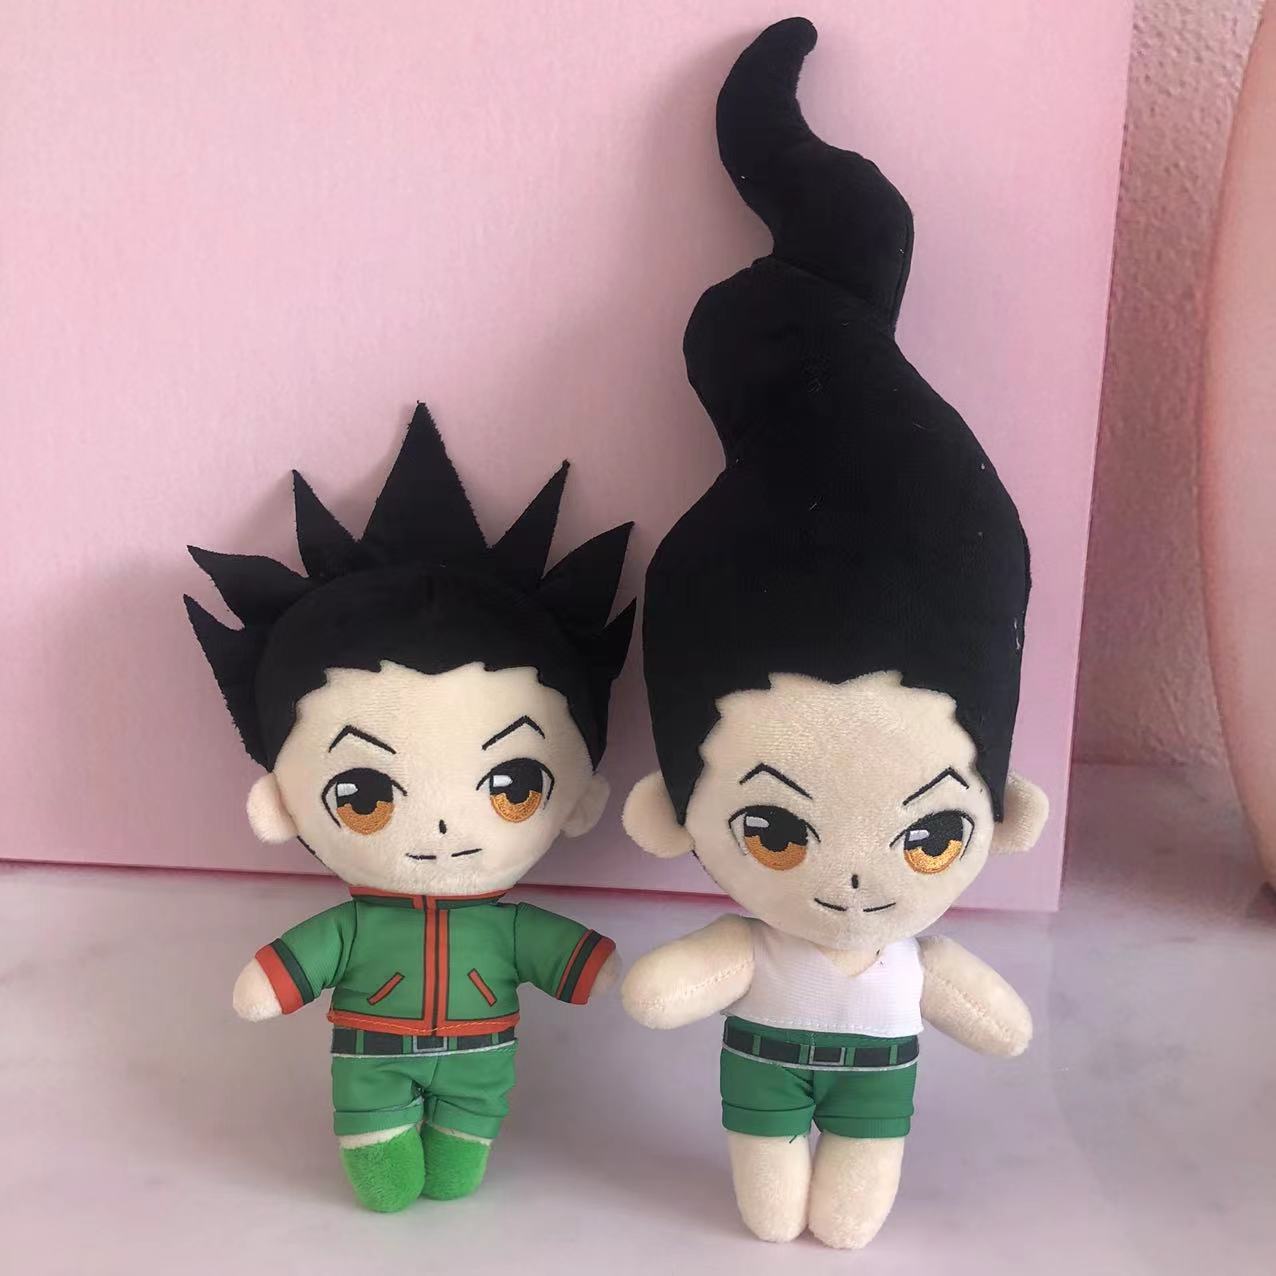 Anime Plush Jujutsu Kaisen - Uoozii - Gojo Satoru Plushie 20cm Kawaii Doll  Cute Stuffed Anime Figure Toy Jujutsu Plush - Movies & Tv - AliExpress